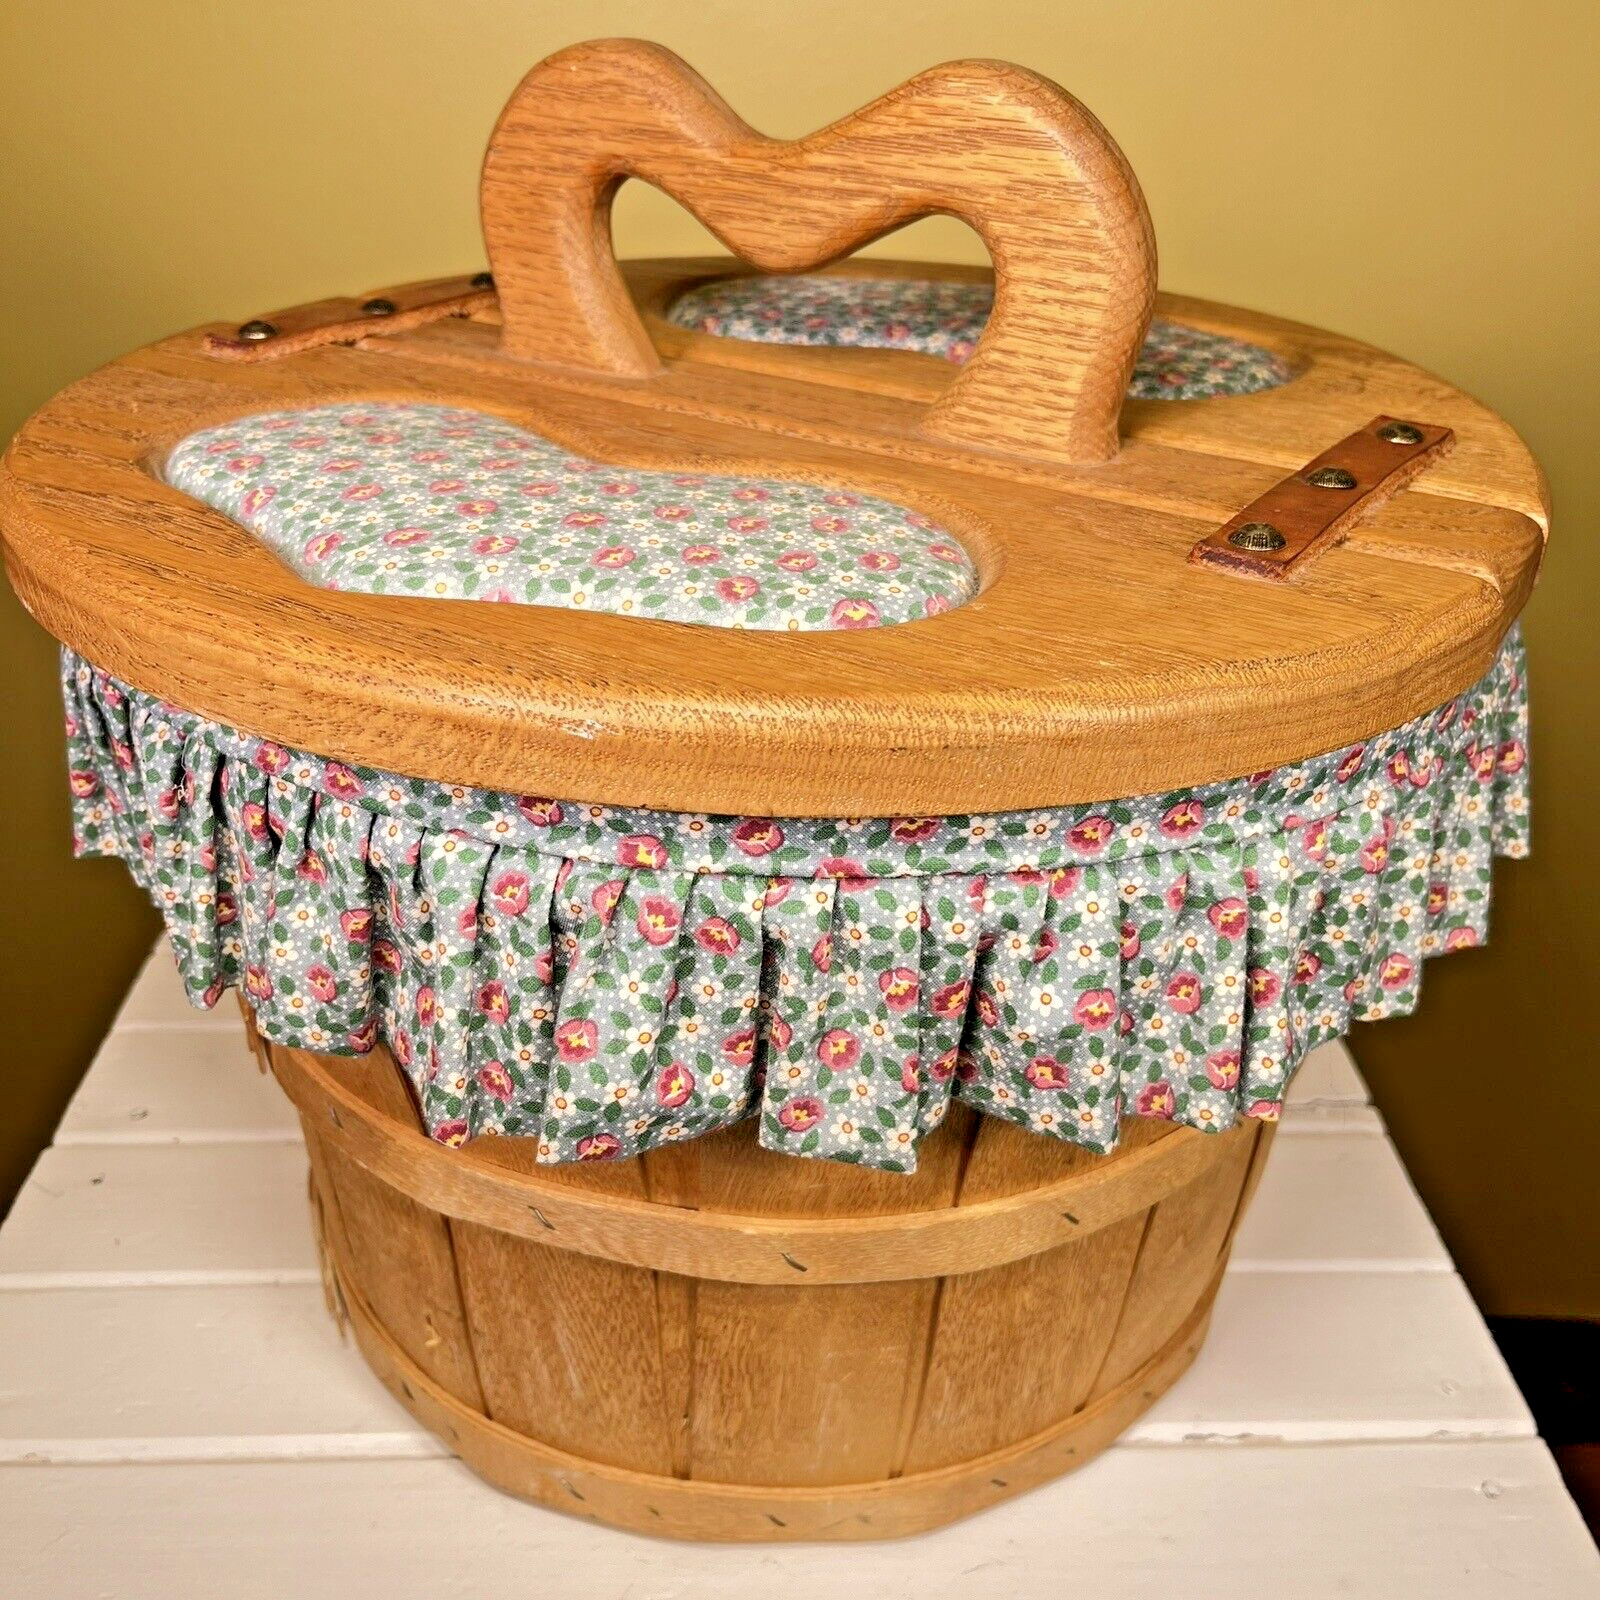 Vintage Storage Basket Lidded Sewing Basket Barrel Heart Cottagecore Blue Floral